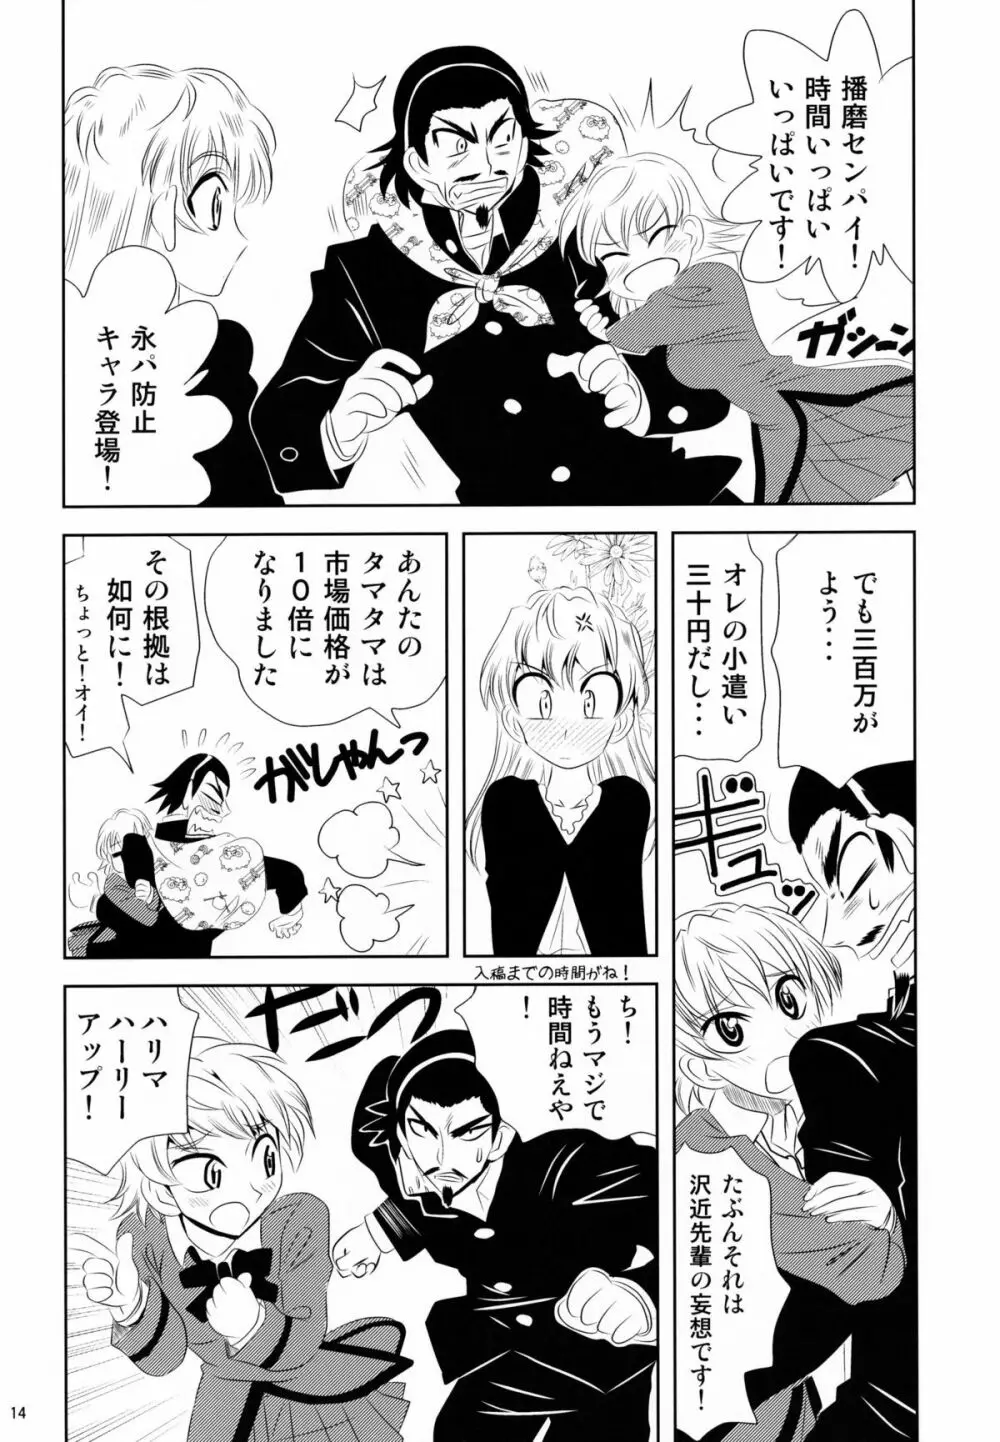 school ちゃんぷるー 13 14ページ